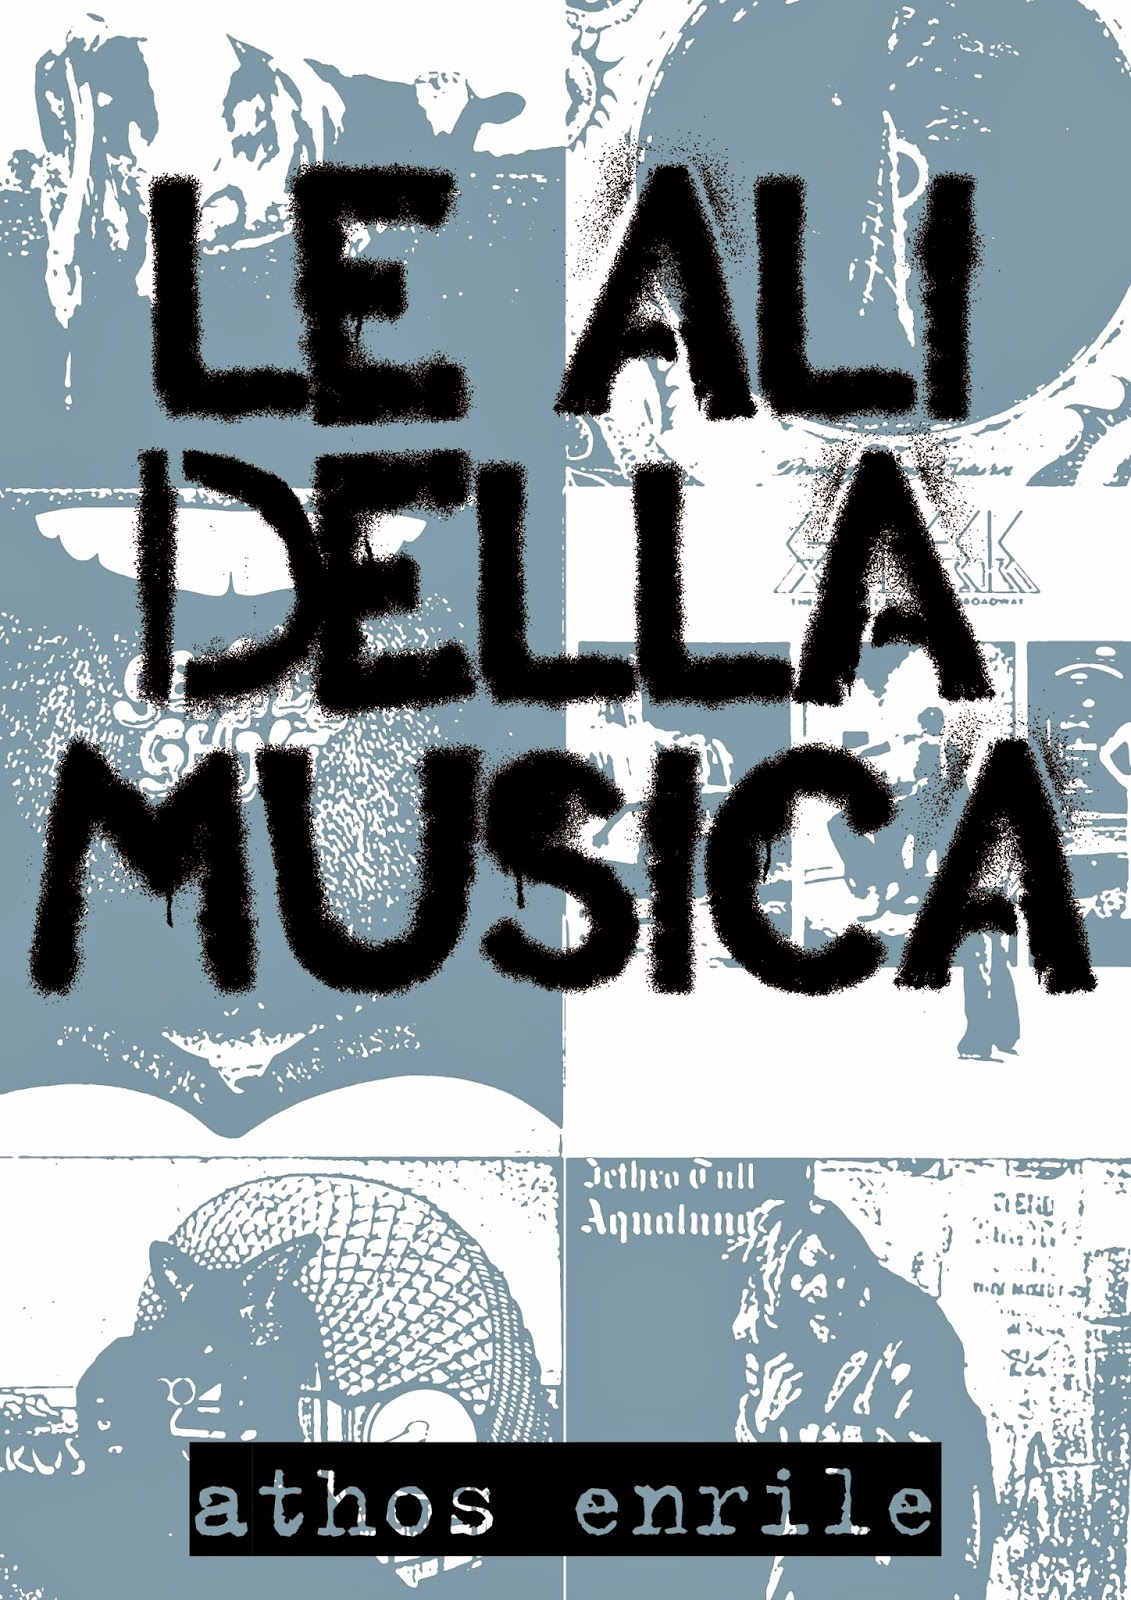 Le Ali della Musica, di Athos Enrile